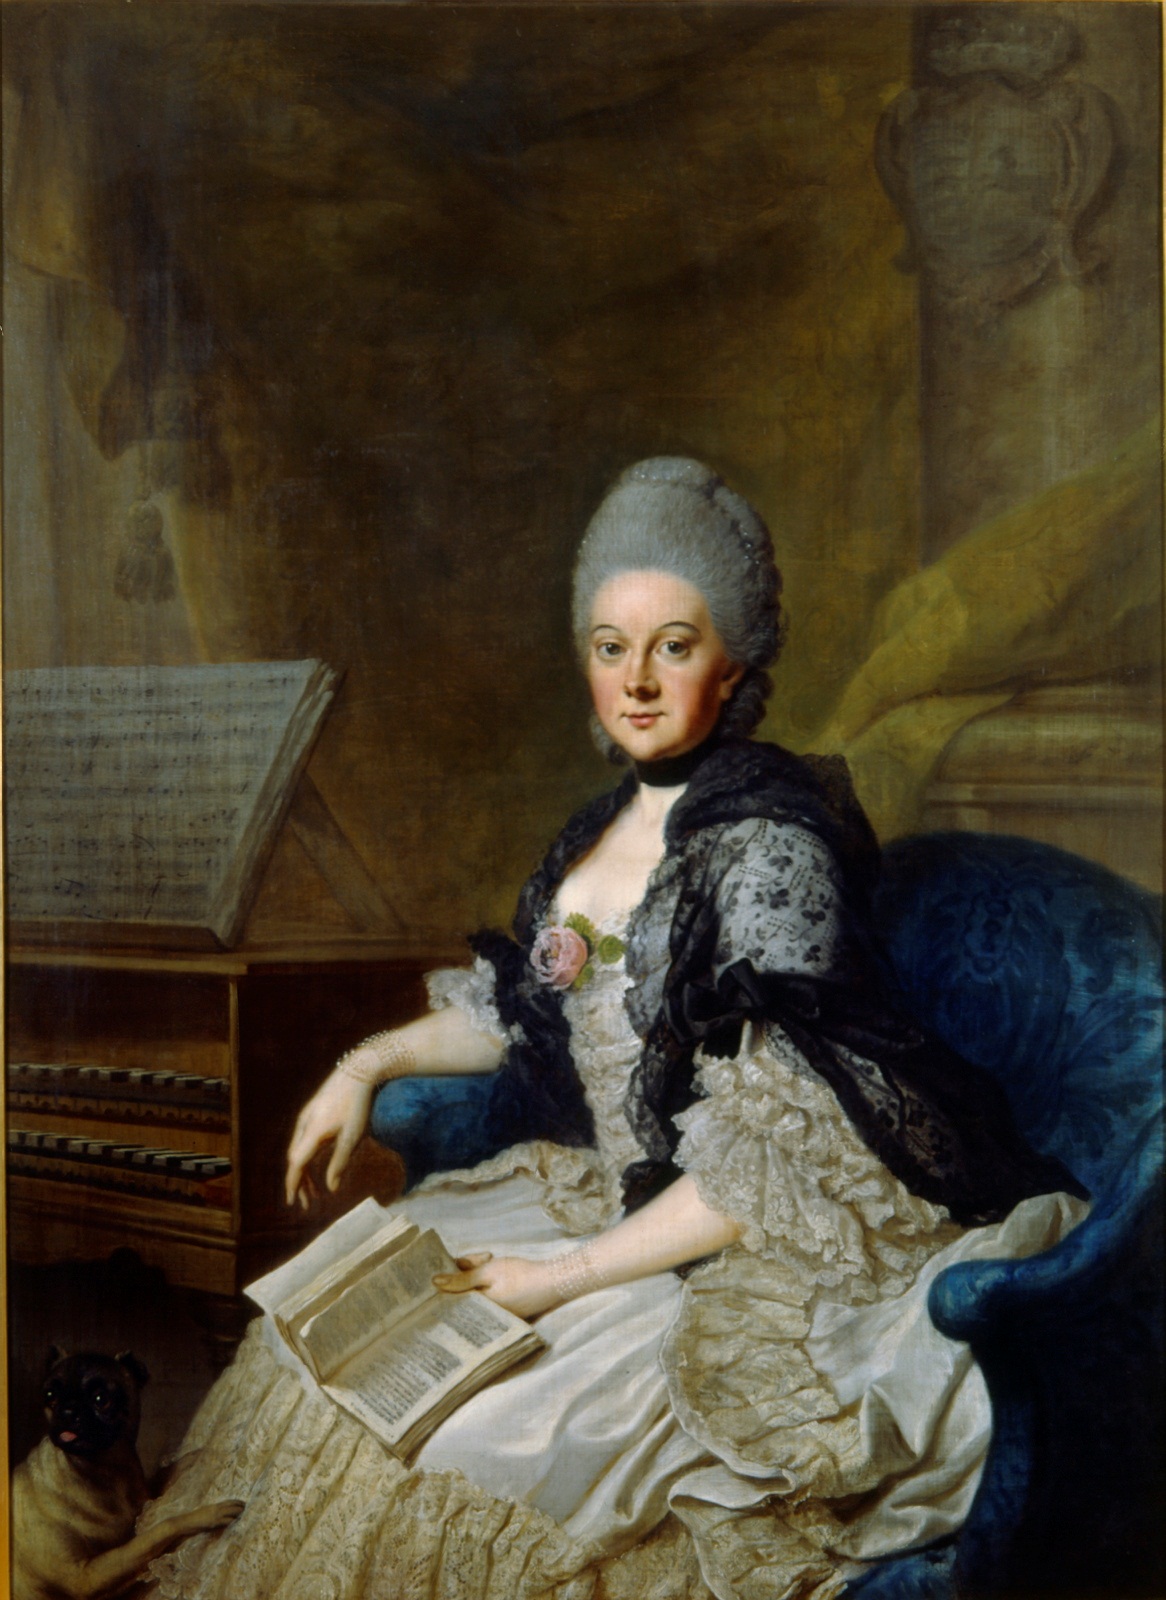 Herzogin Anna Amalia gemalt von Johann Georg Ziesenis